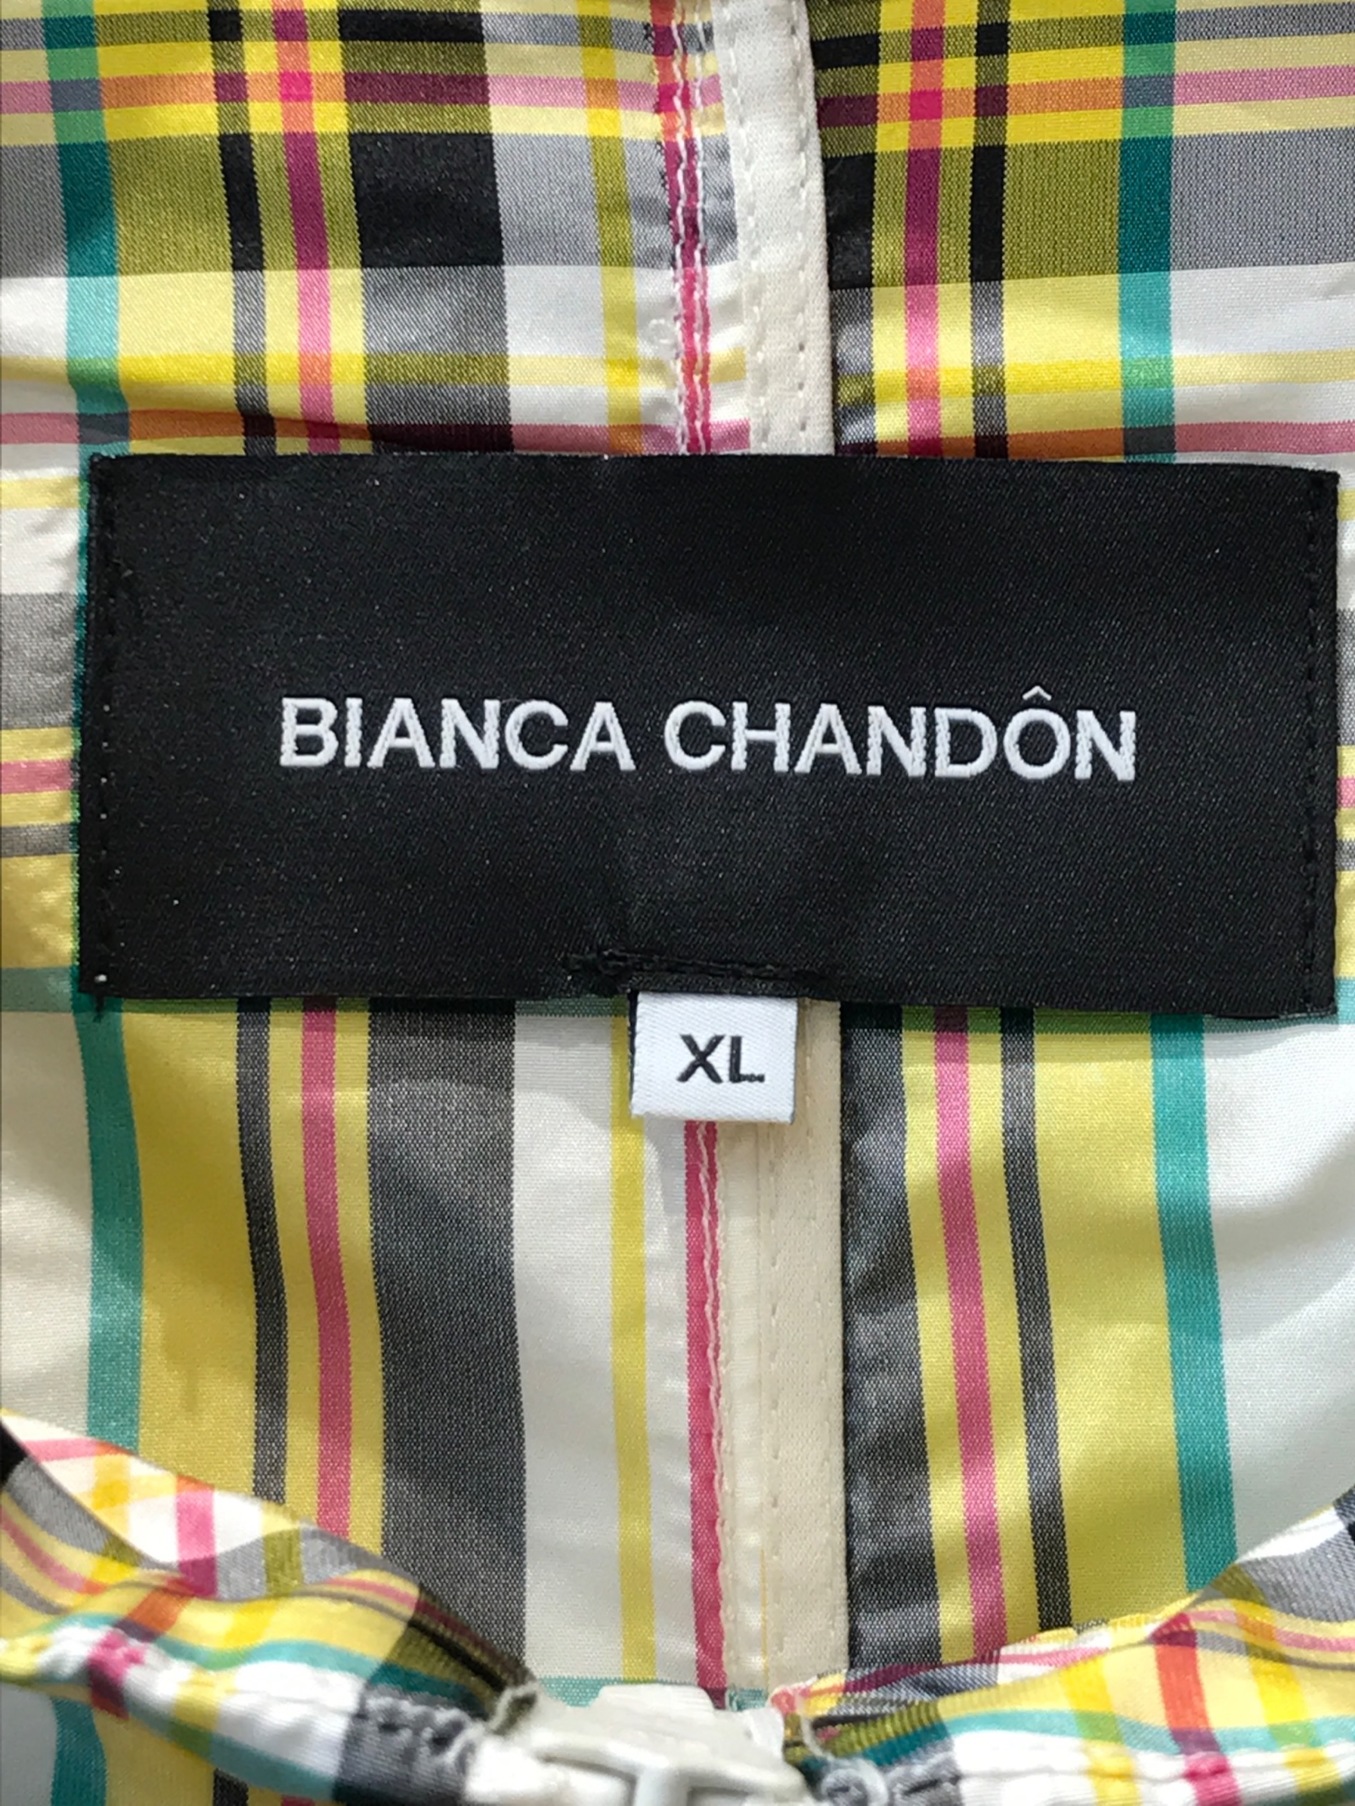 Bianca Chandon ビアンカシャンドン アノラック シルク100 XL